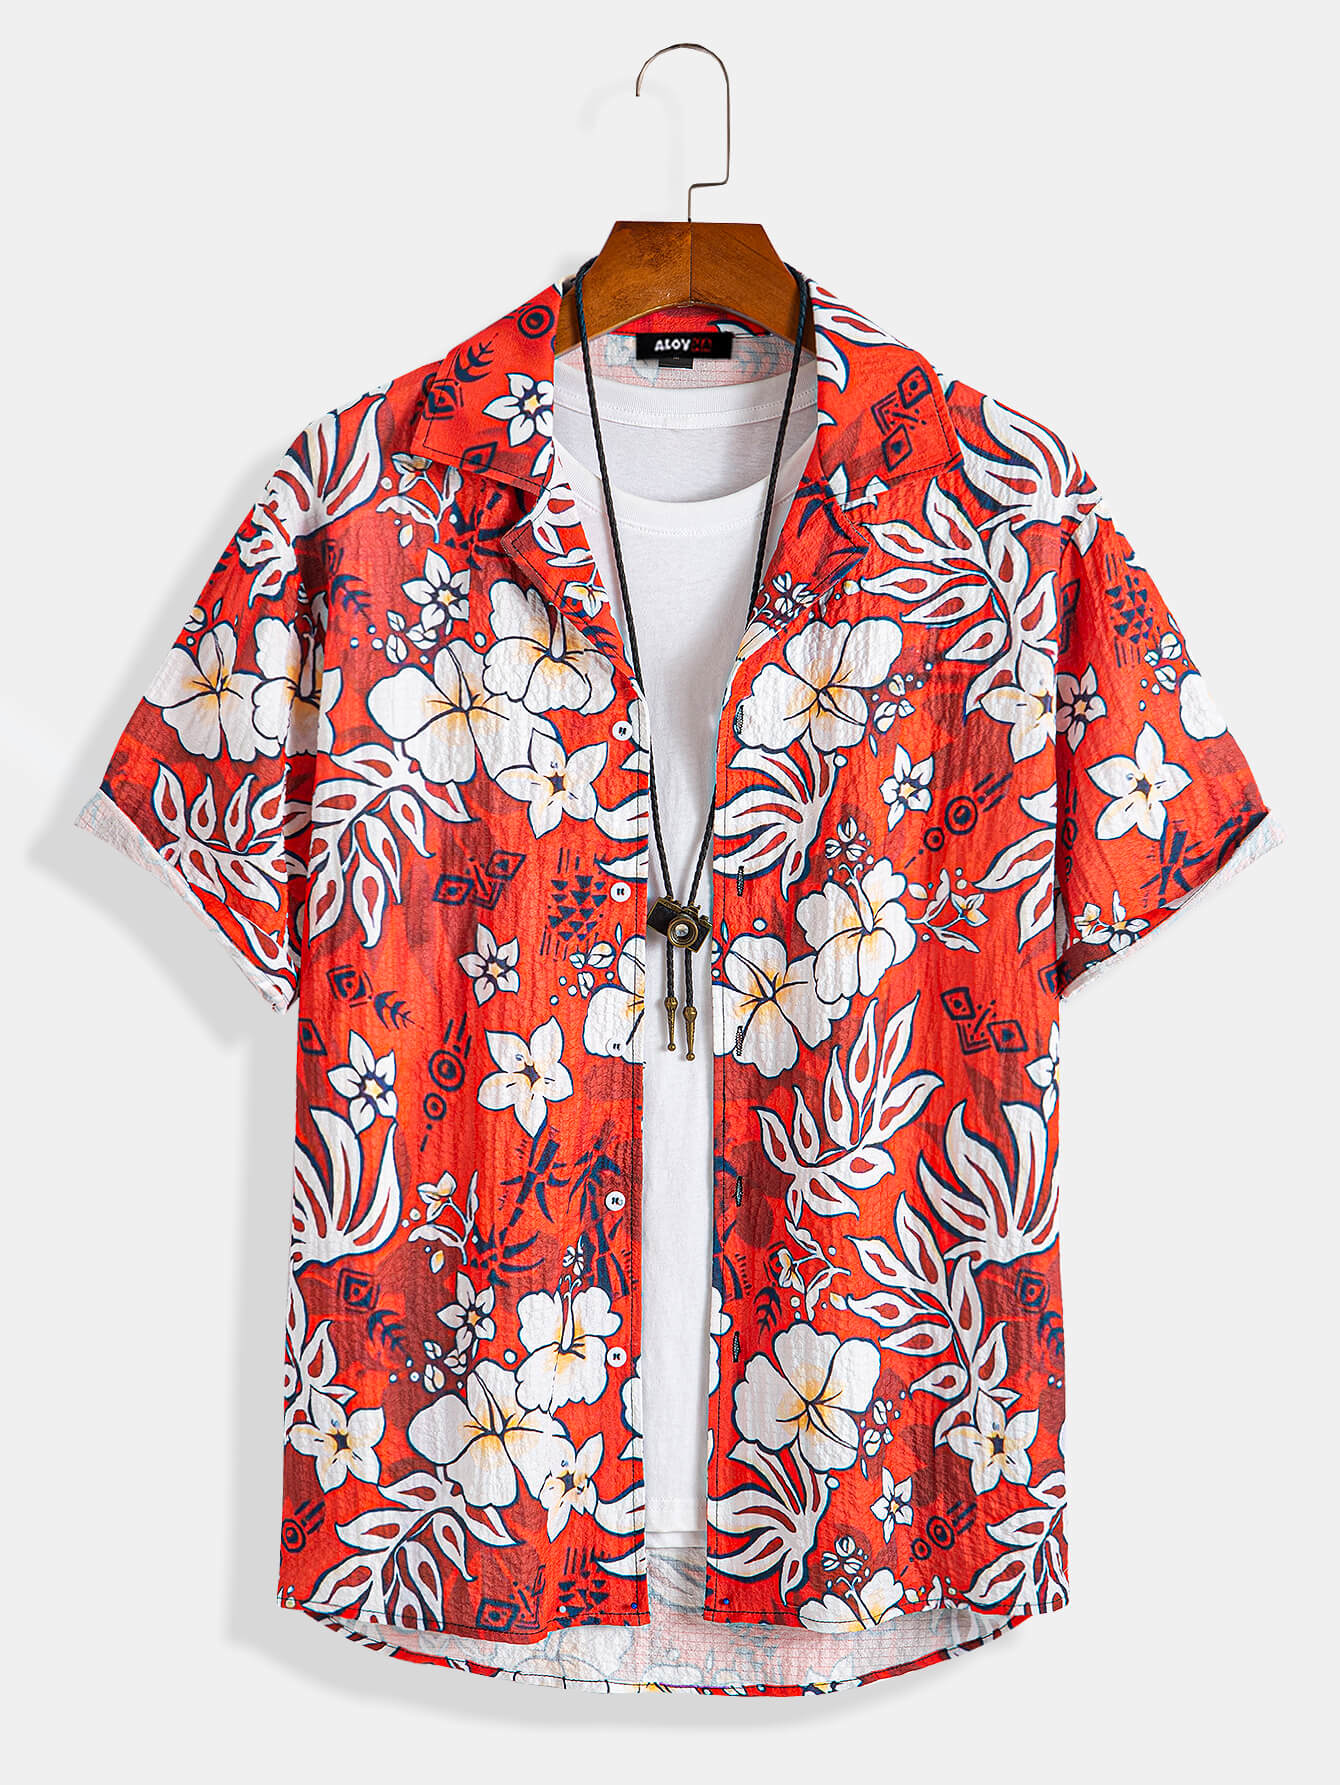 Men's Hawaiian Floral Shirt 1970s Vintage Camping Shirt